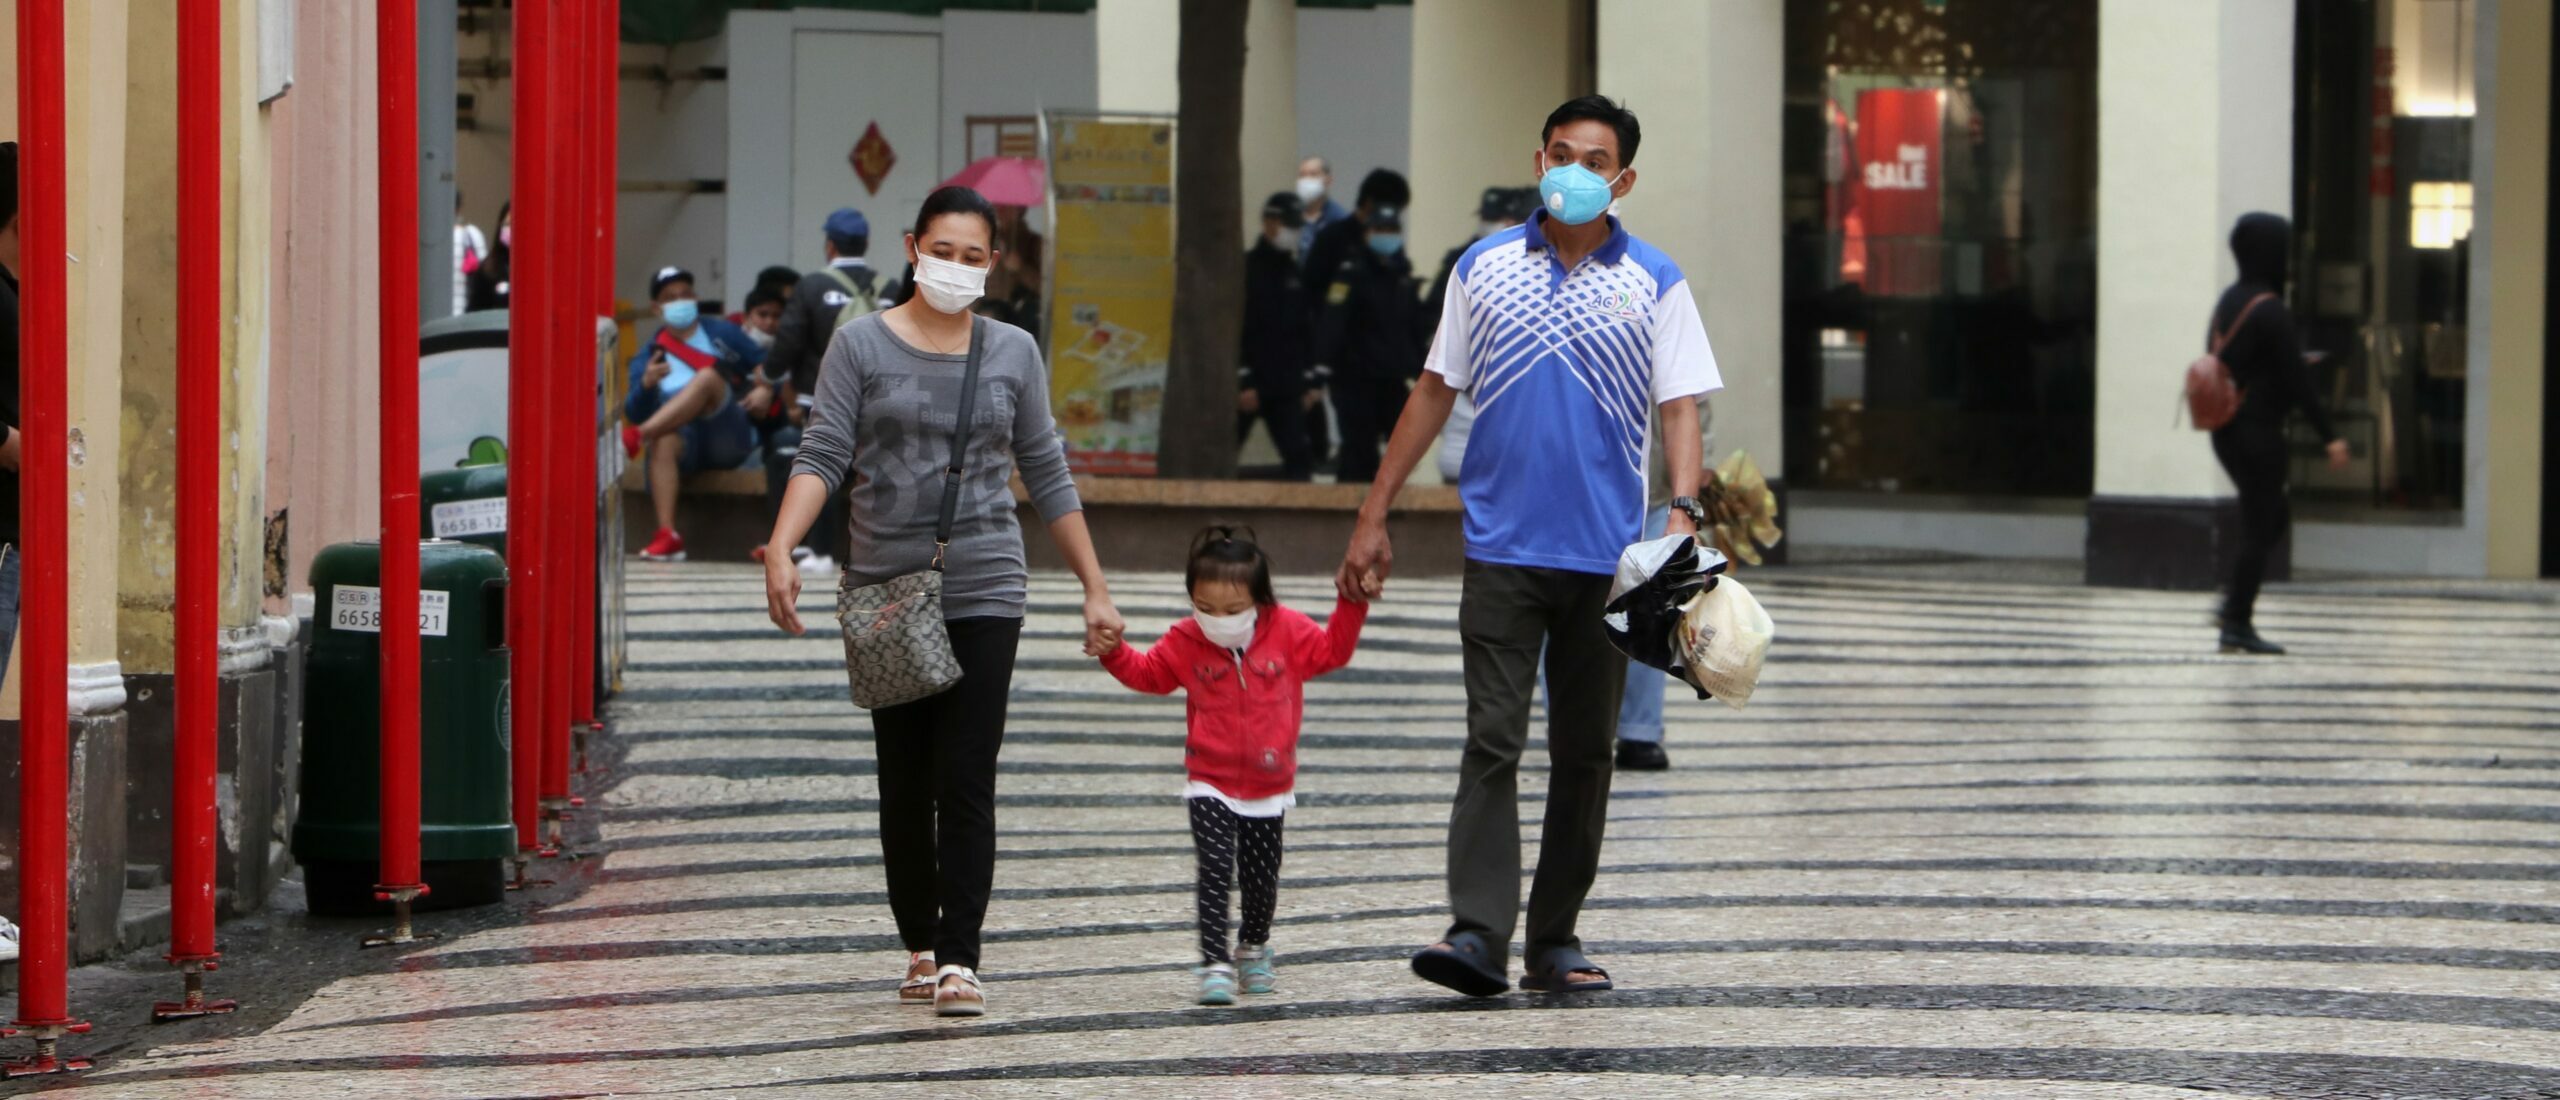 La crise sanitaire a révélé l'importance des liens (Photo par Macau Photo Agency sur Unsplash)